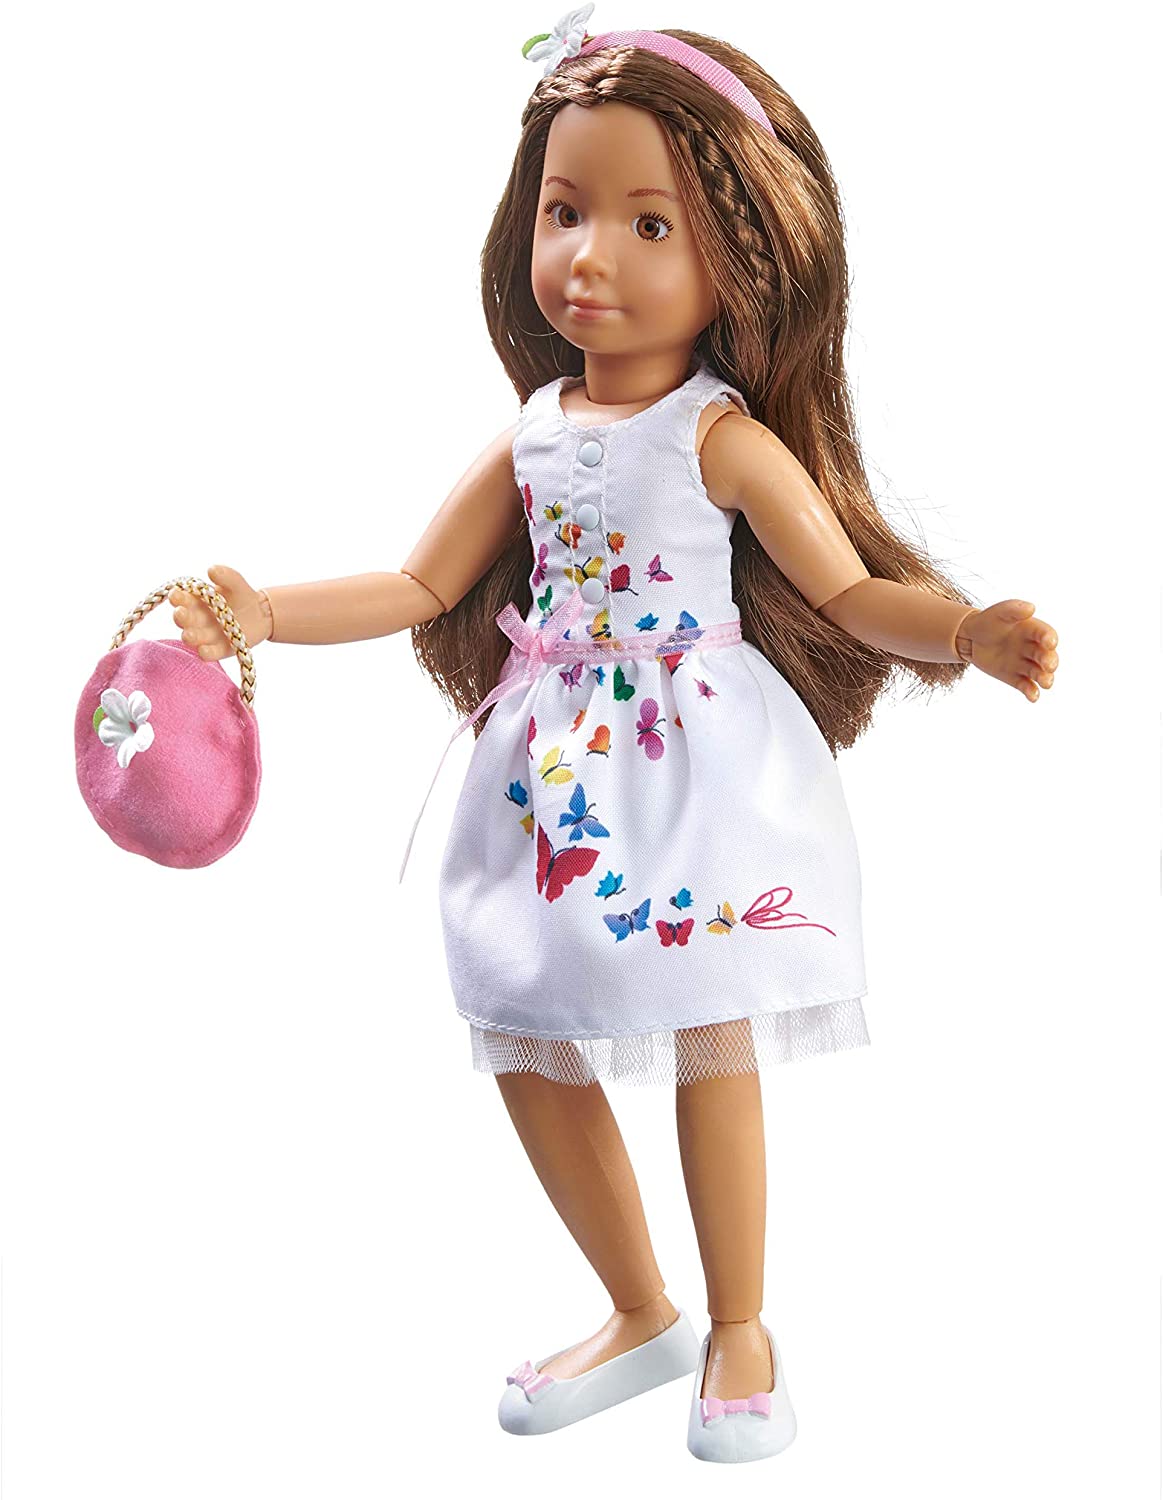 Кукла София в летнем праздничном платье, 23 см  